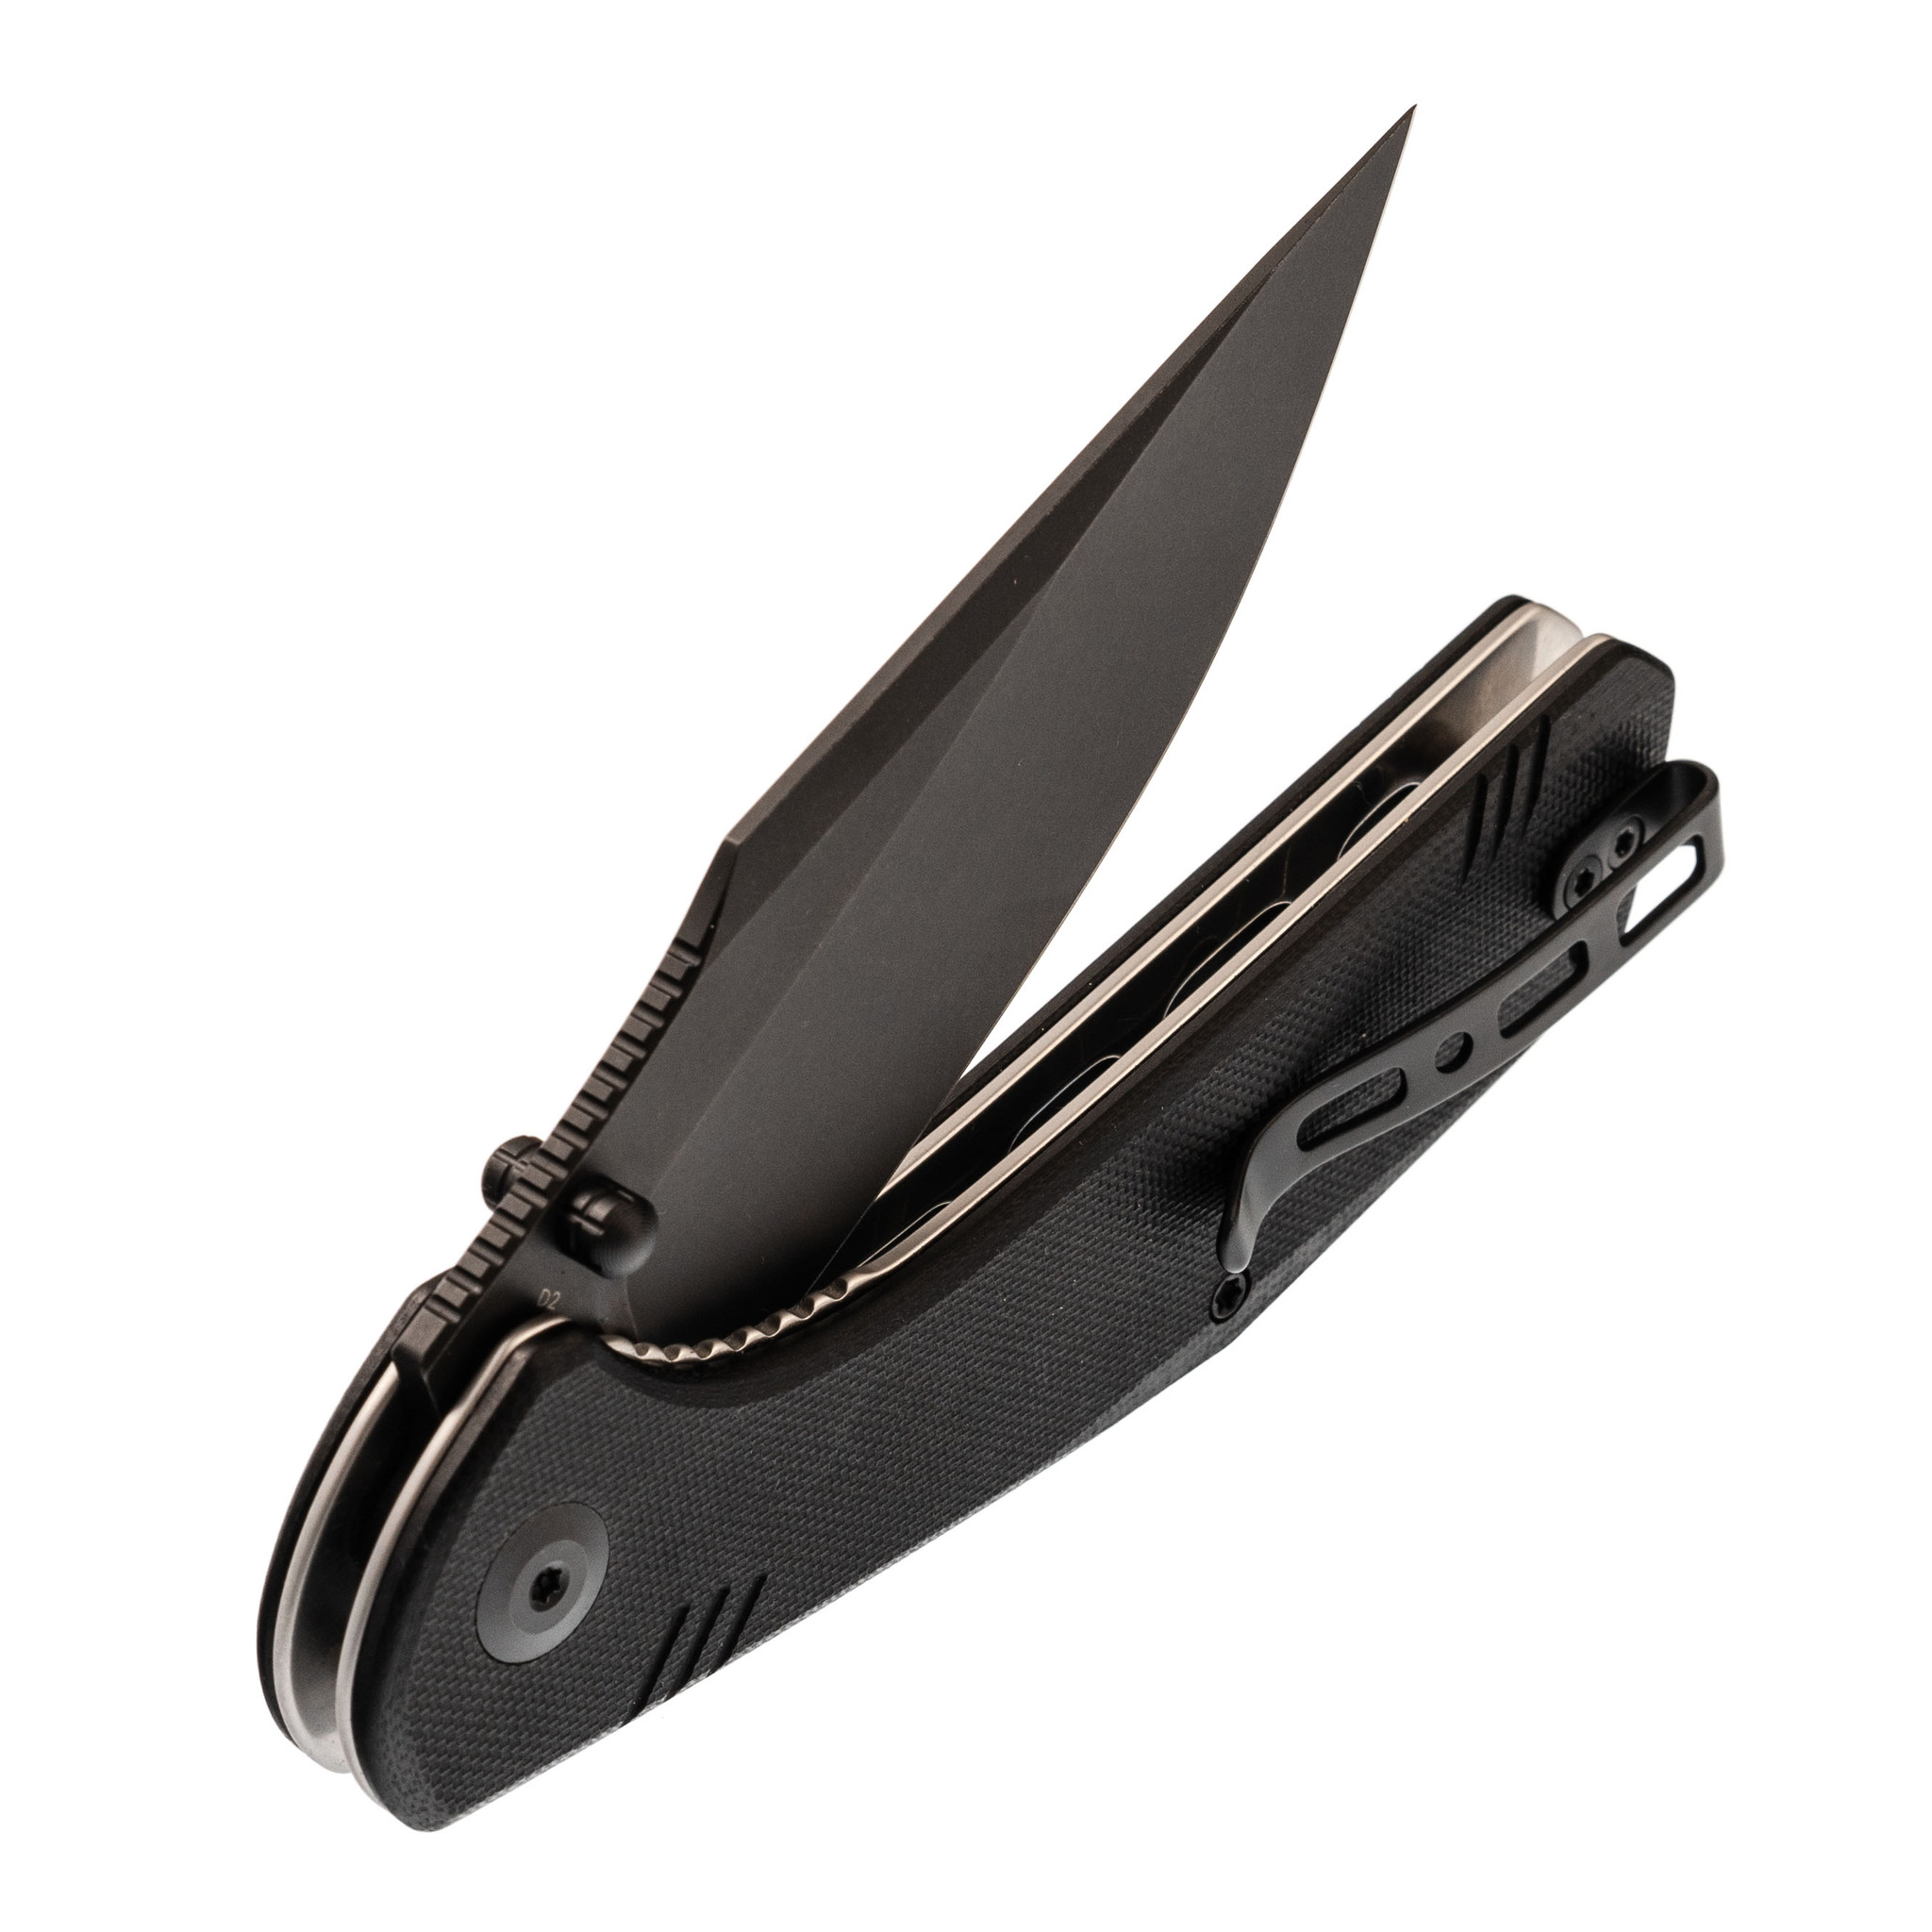 Складной нож Sencut Actium Blackwash, сталь D2, рукоять G10 - фото 5